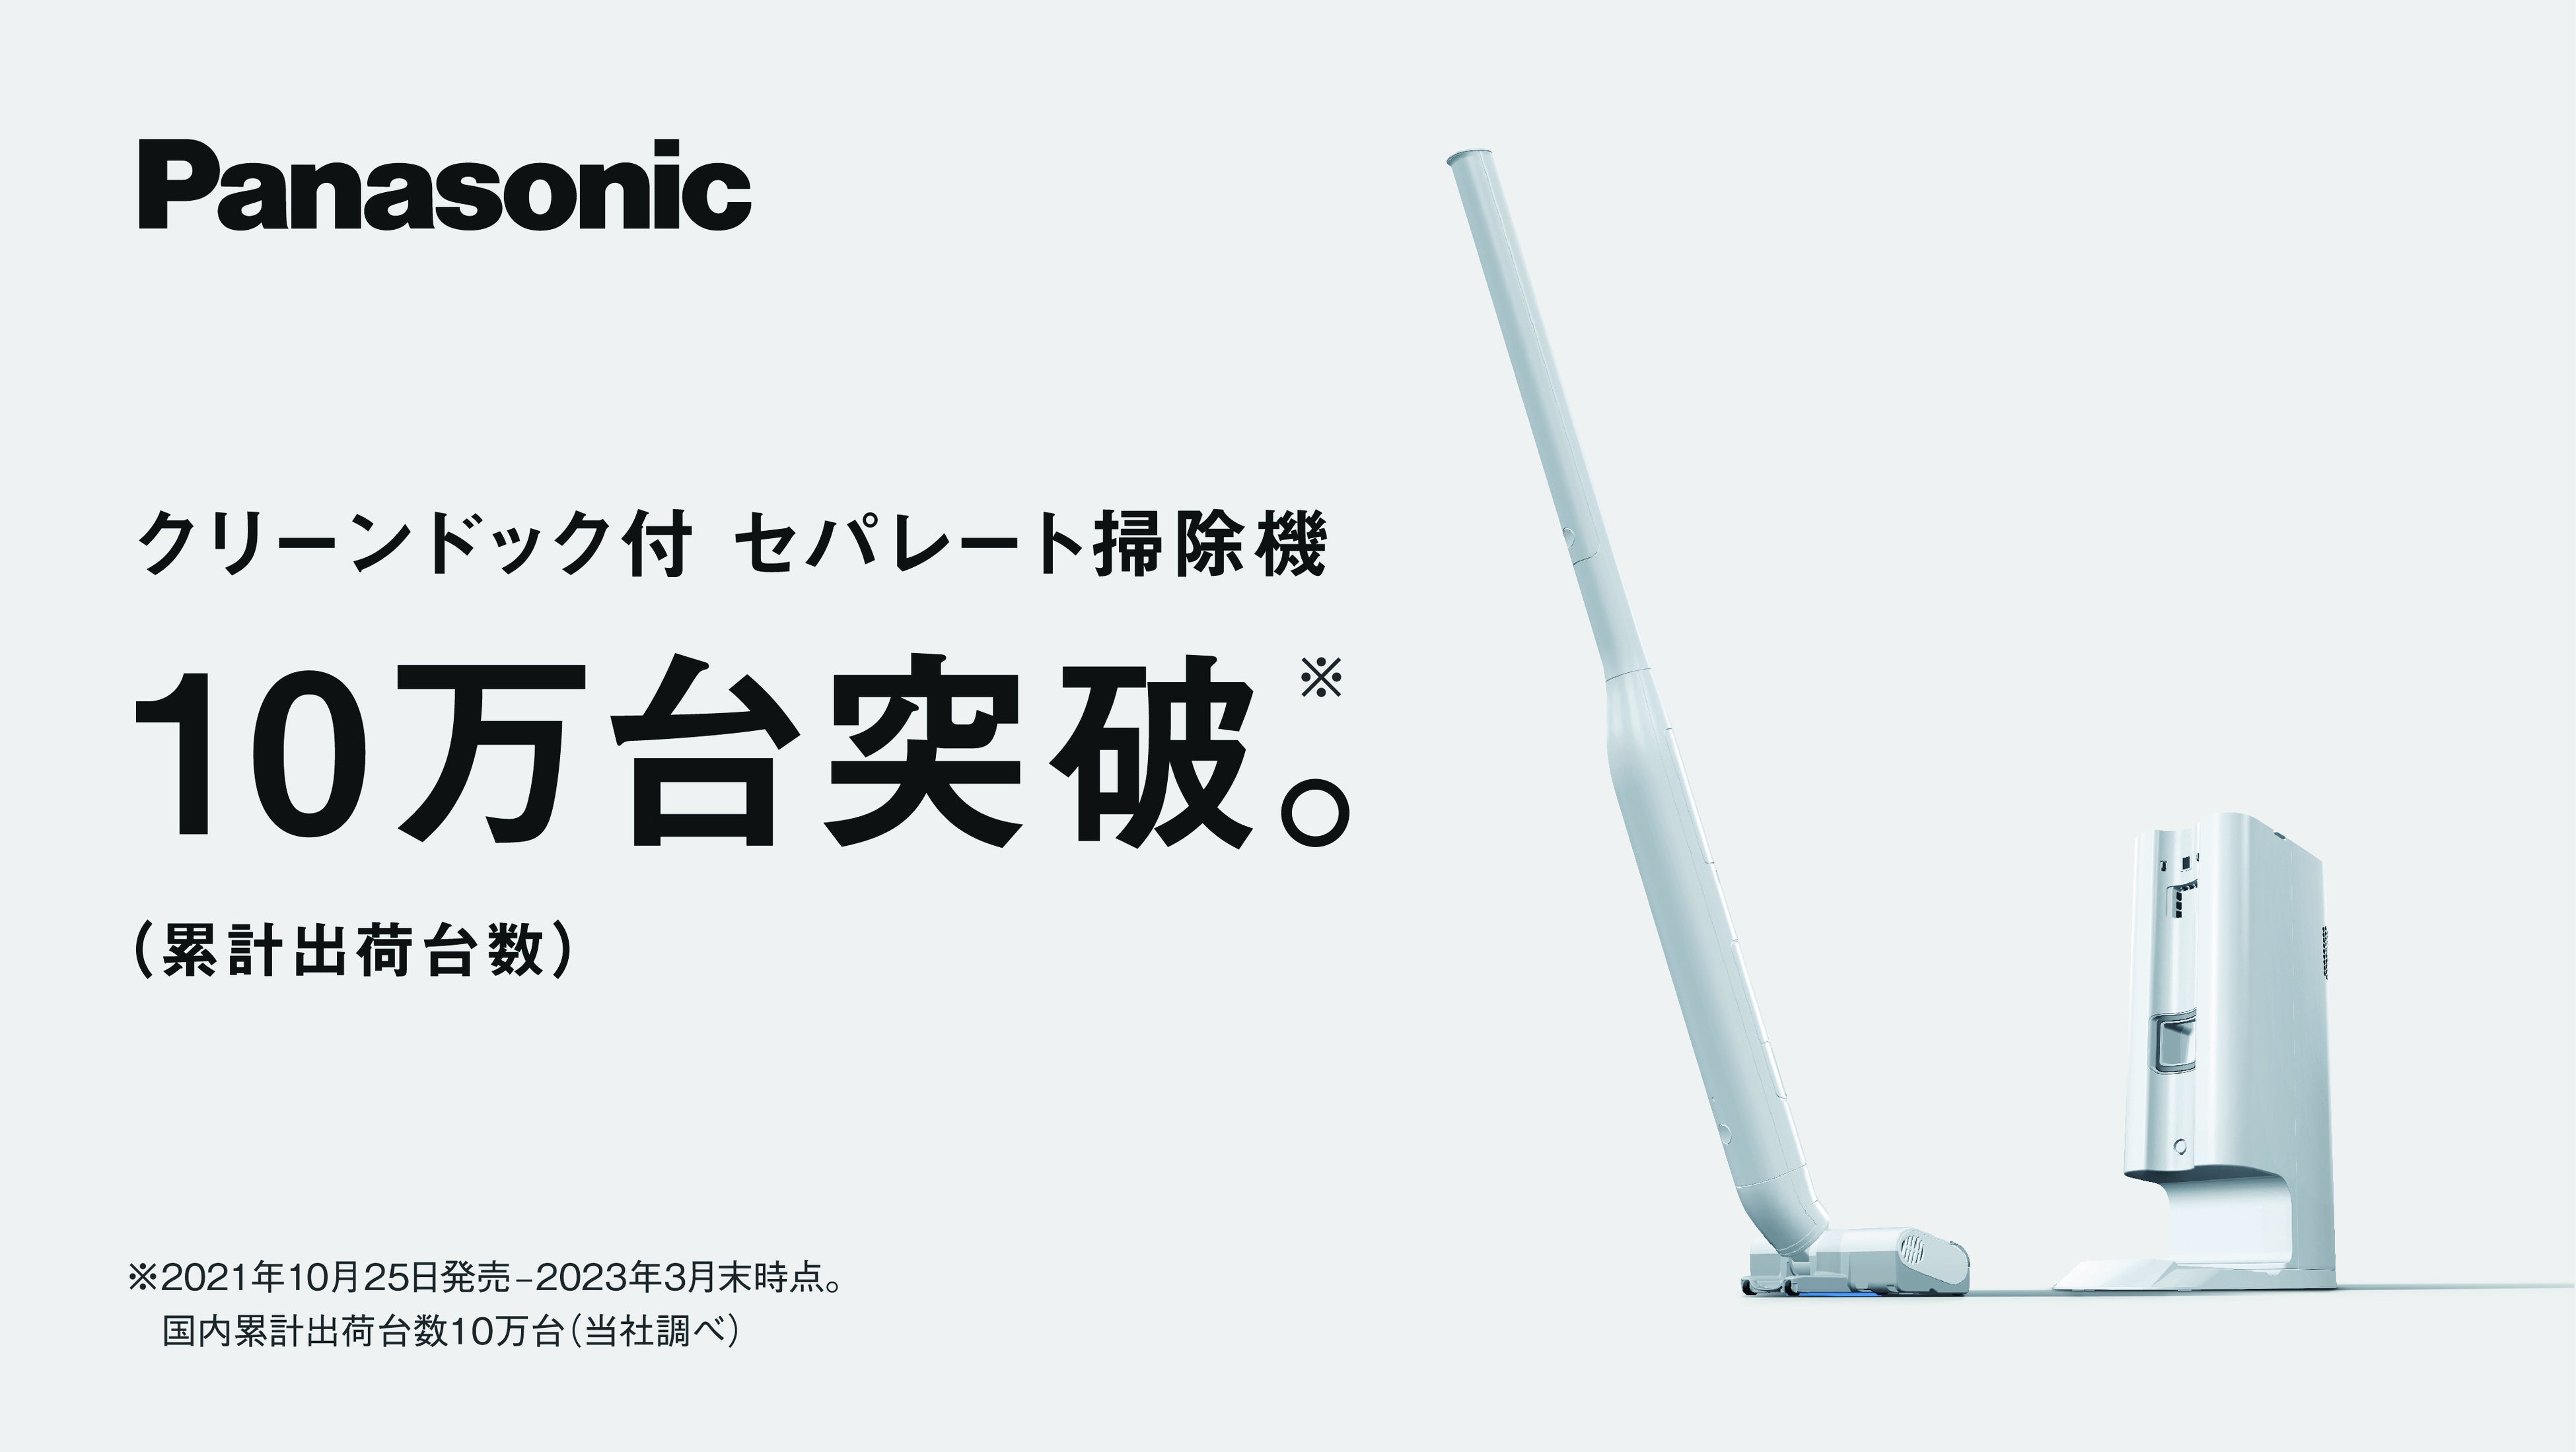 【美品】Panasonic MC-NS10K-Wセパレート式コードレス掃除機